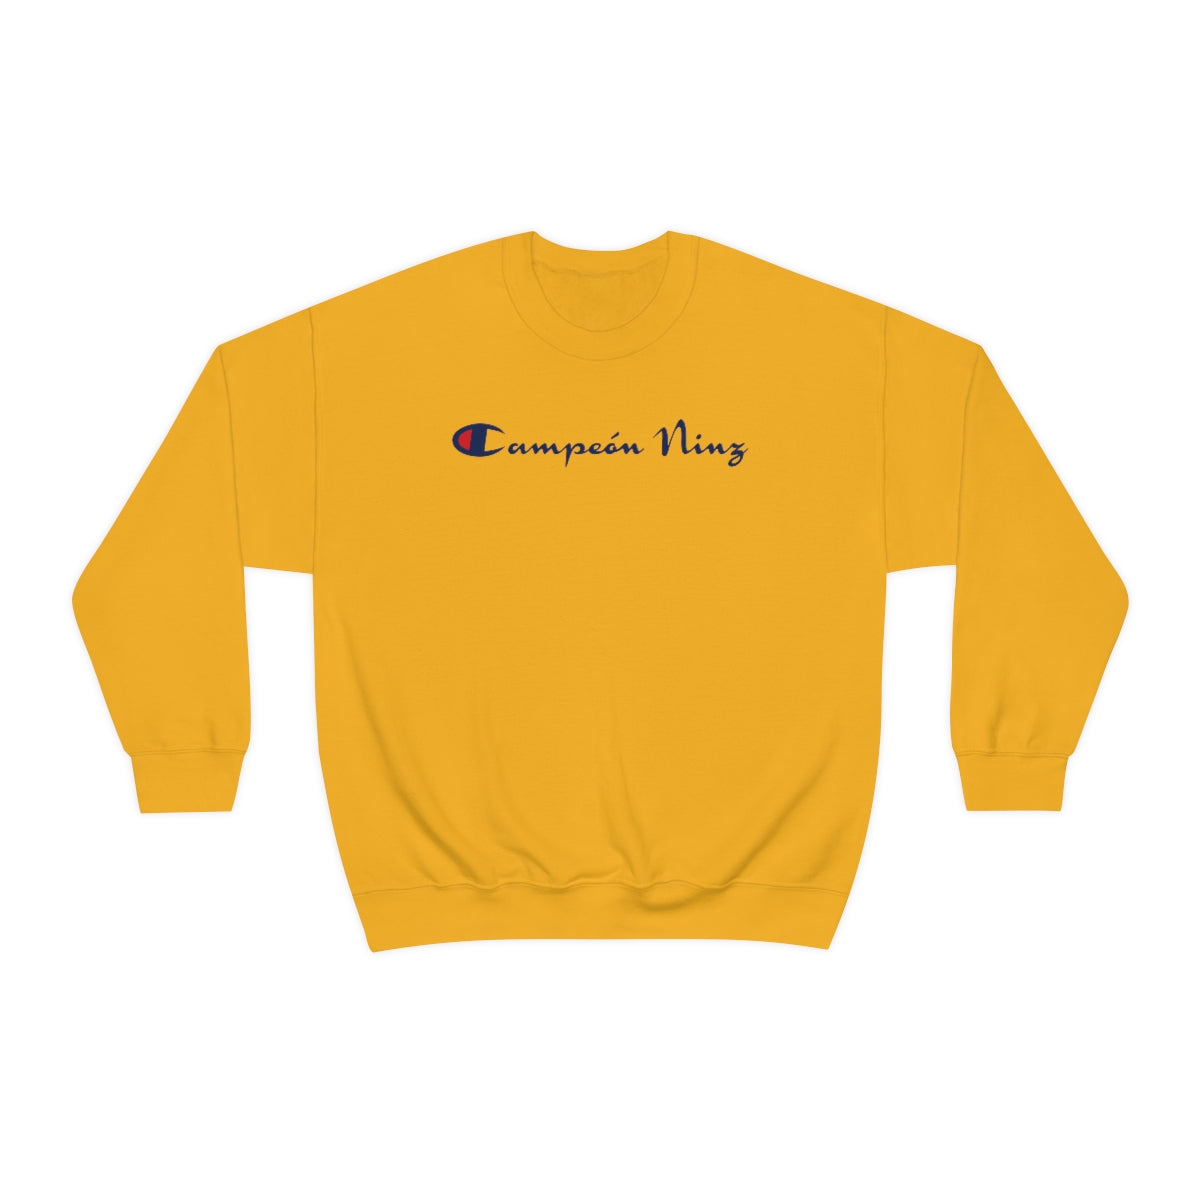 Champion Ninz™ (Front & Back Print) YELLOW Crewneck Sweatshirt